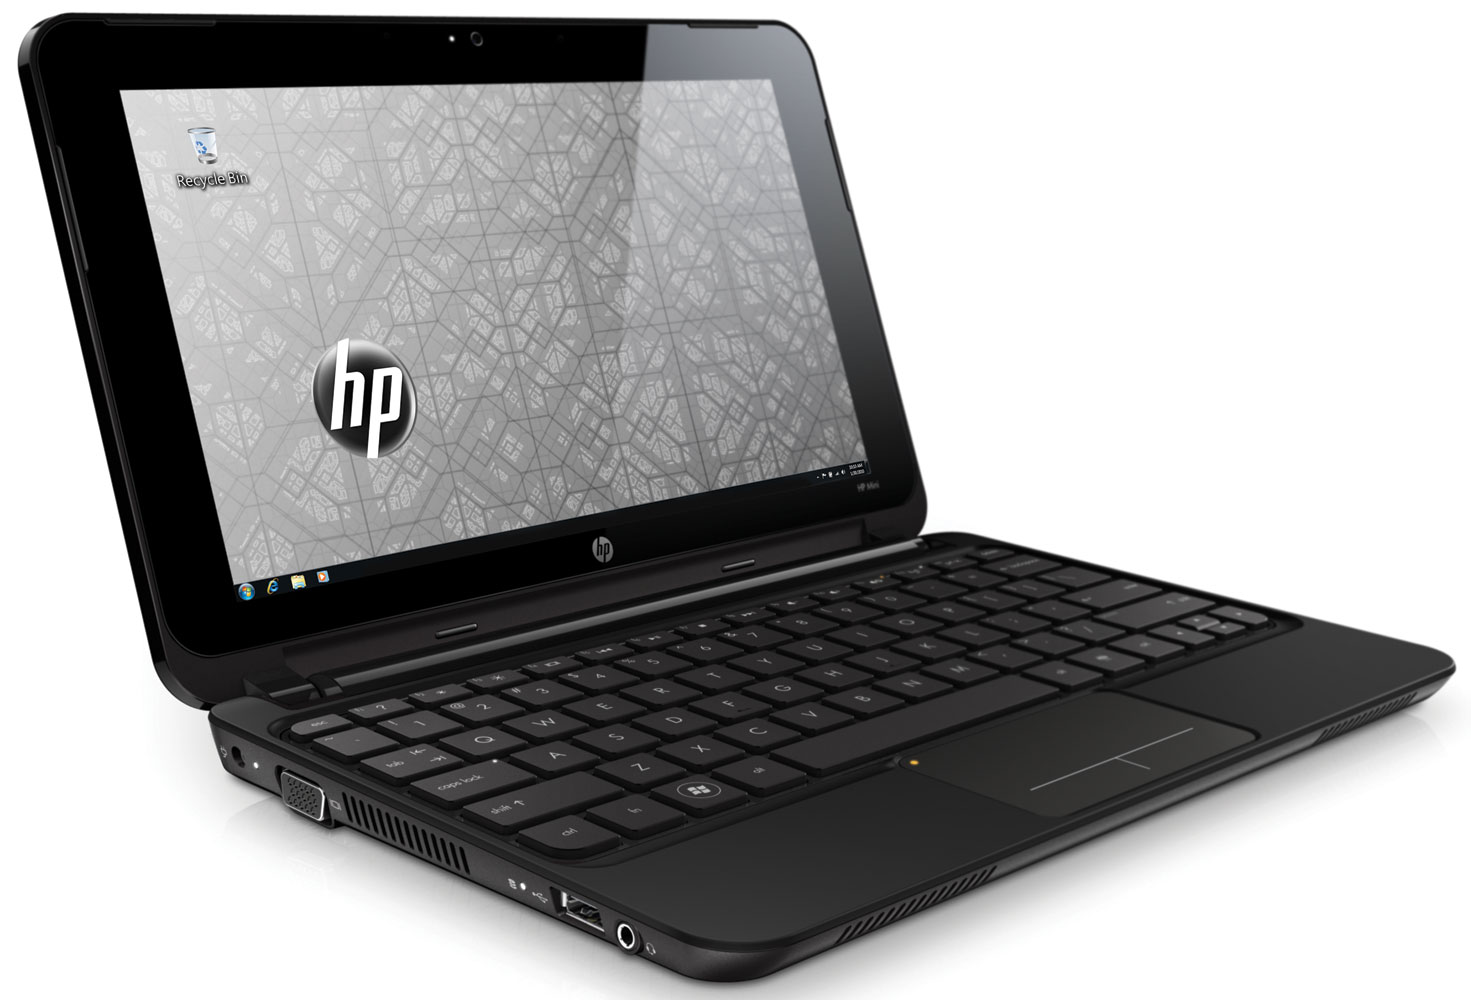 HP Mini 110-3101ER Notebook